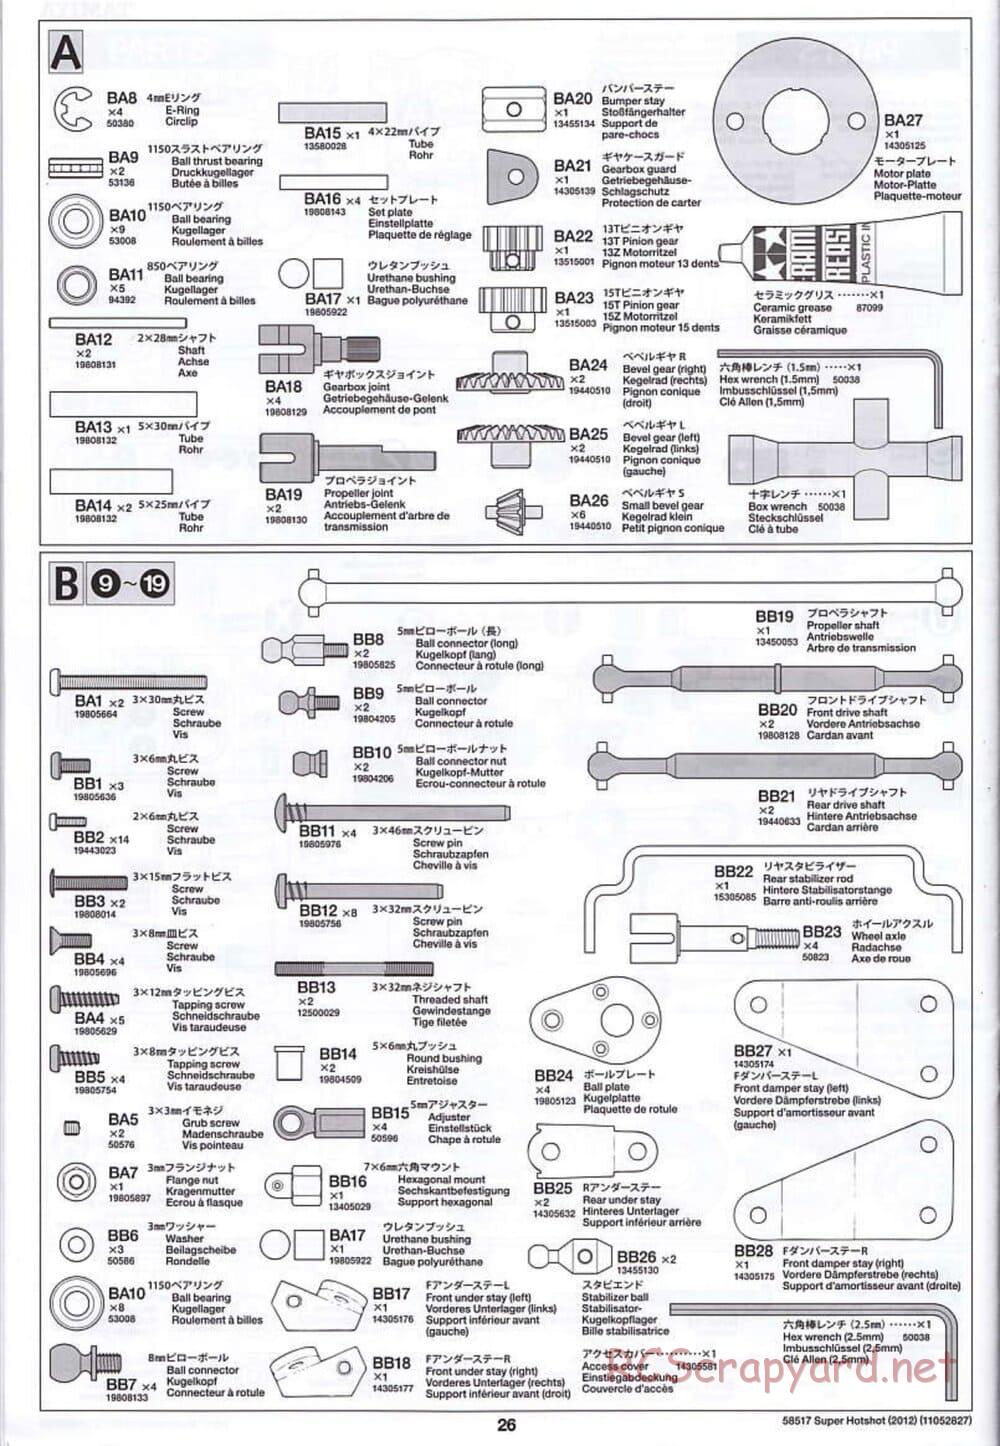 Tamiya - Super Hotshot 2012 - HS Chassis - Manual - Page 26